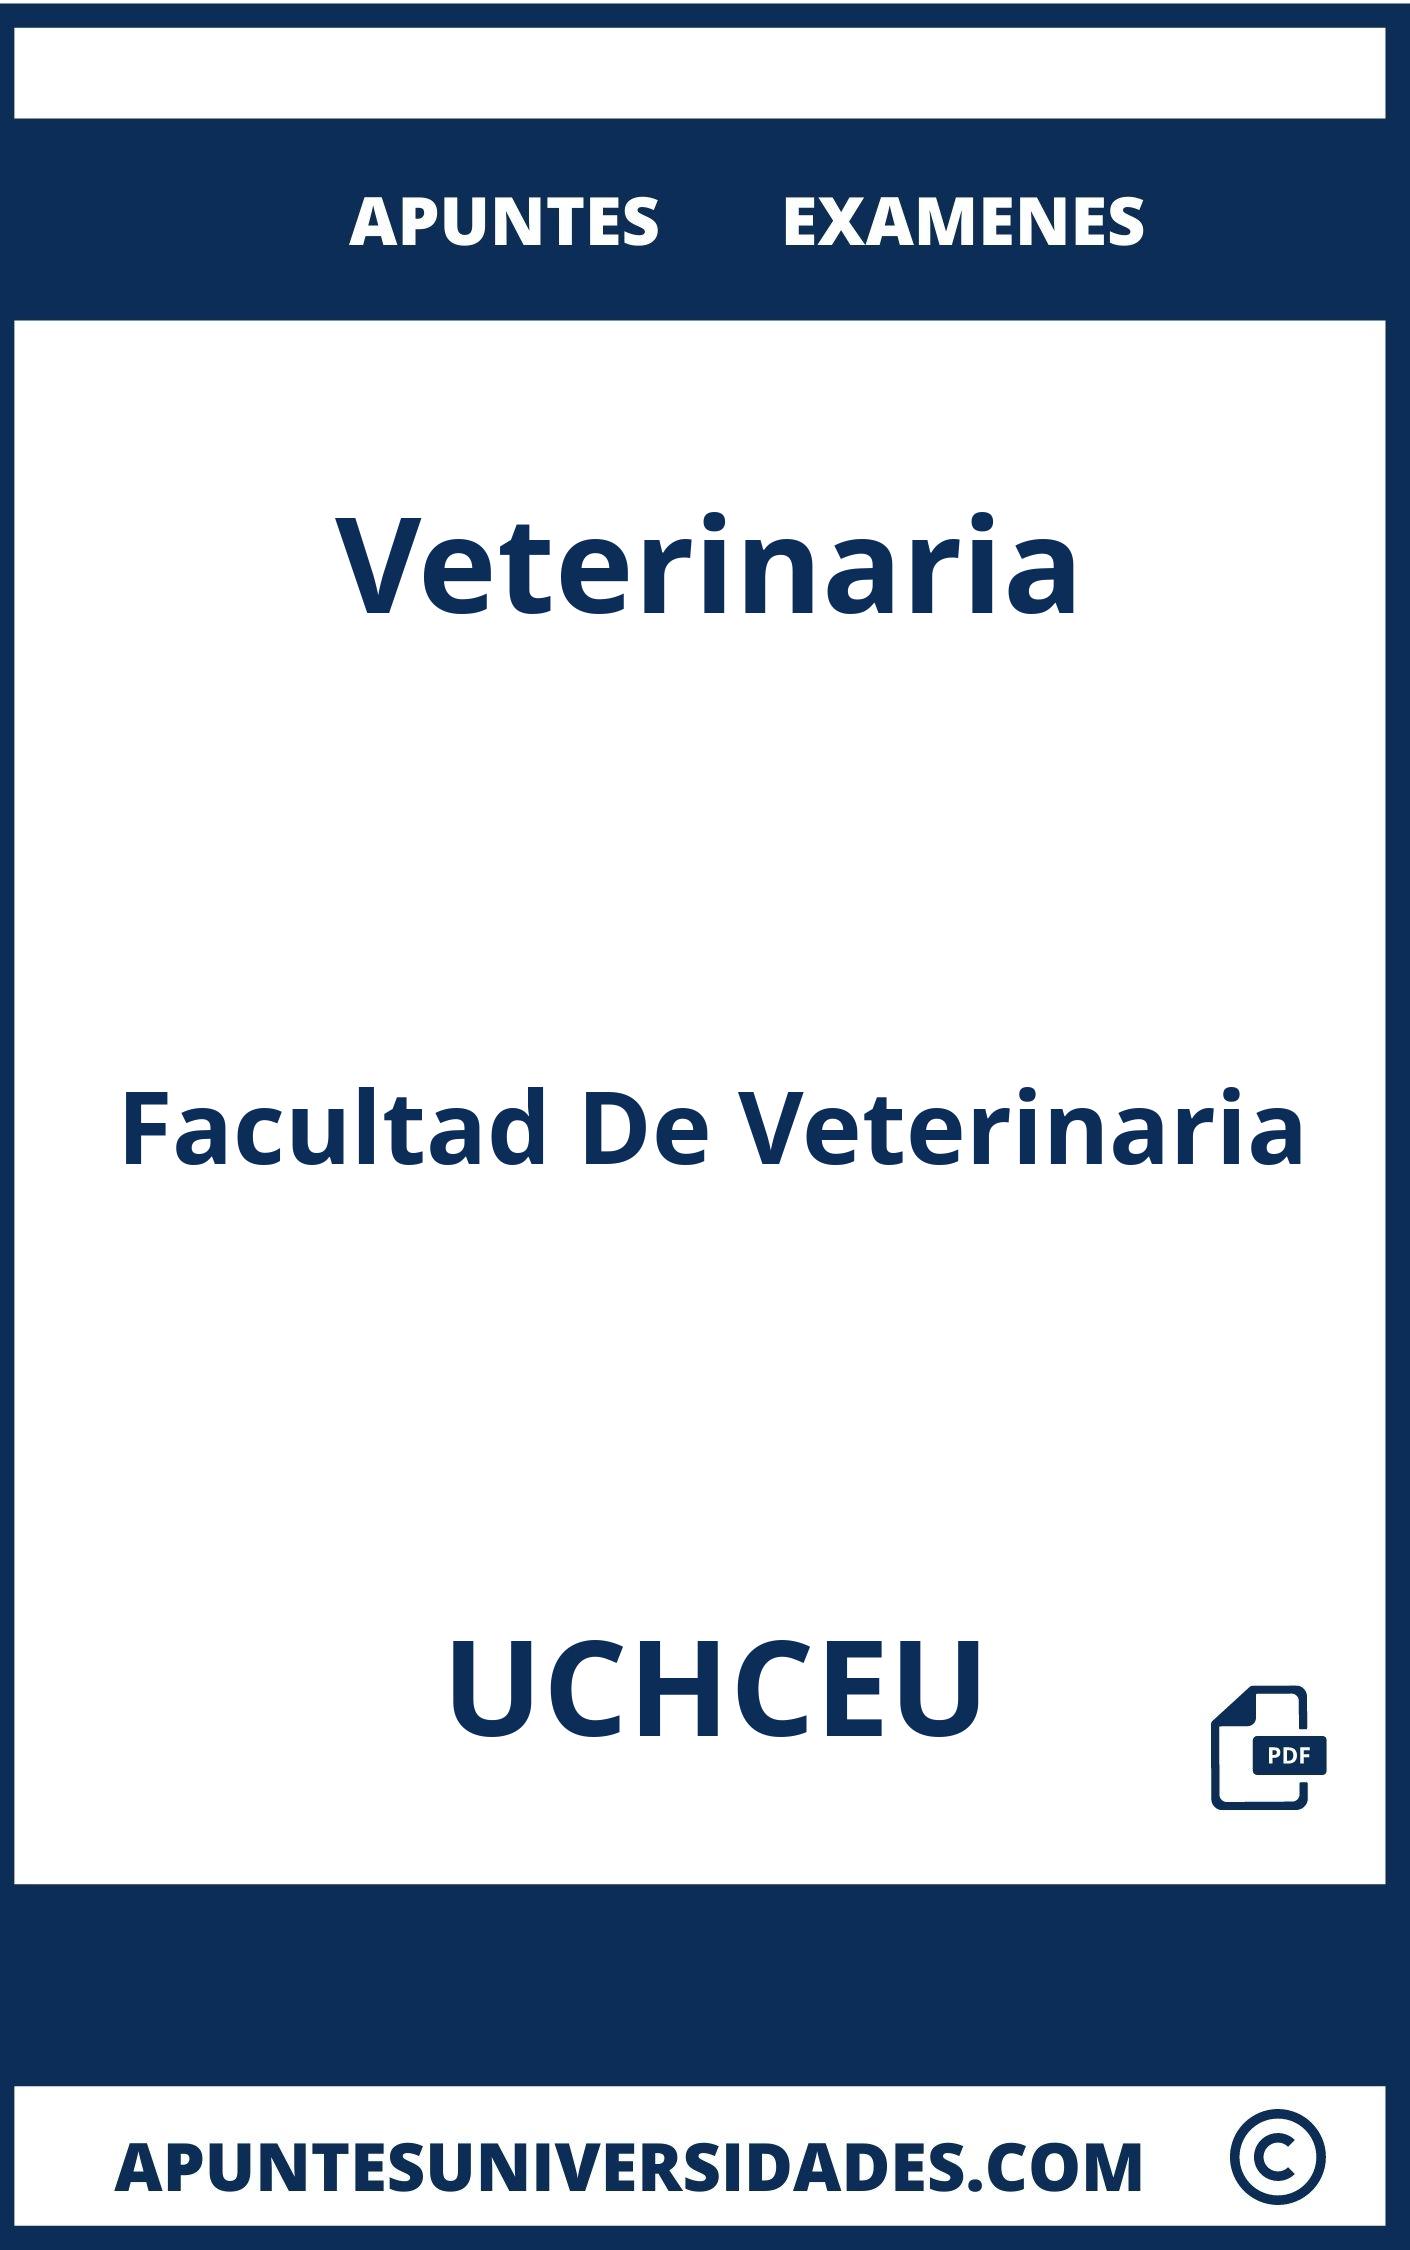 Apuntes y Examenes Veterinaria UCHCEU